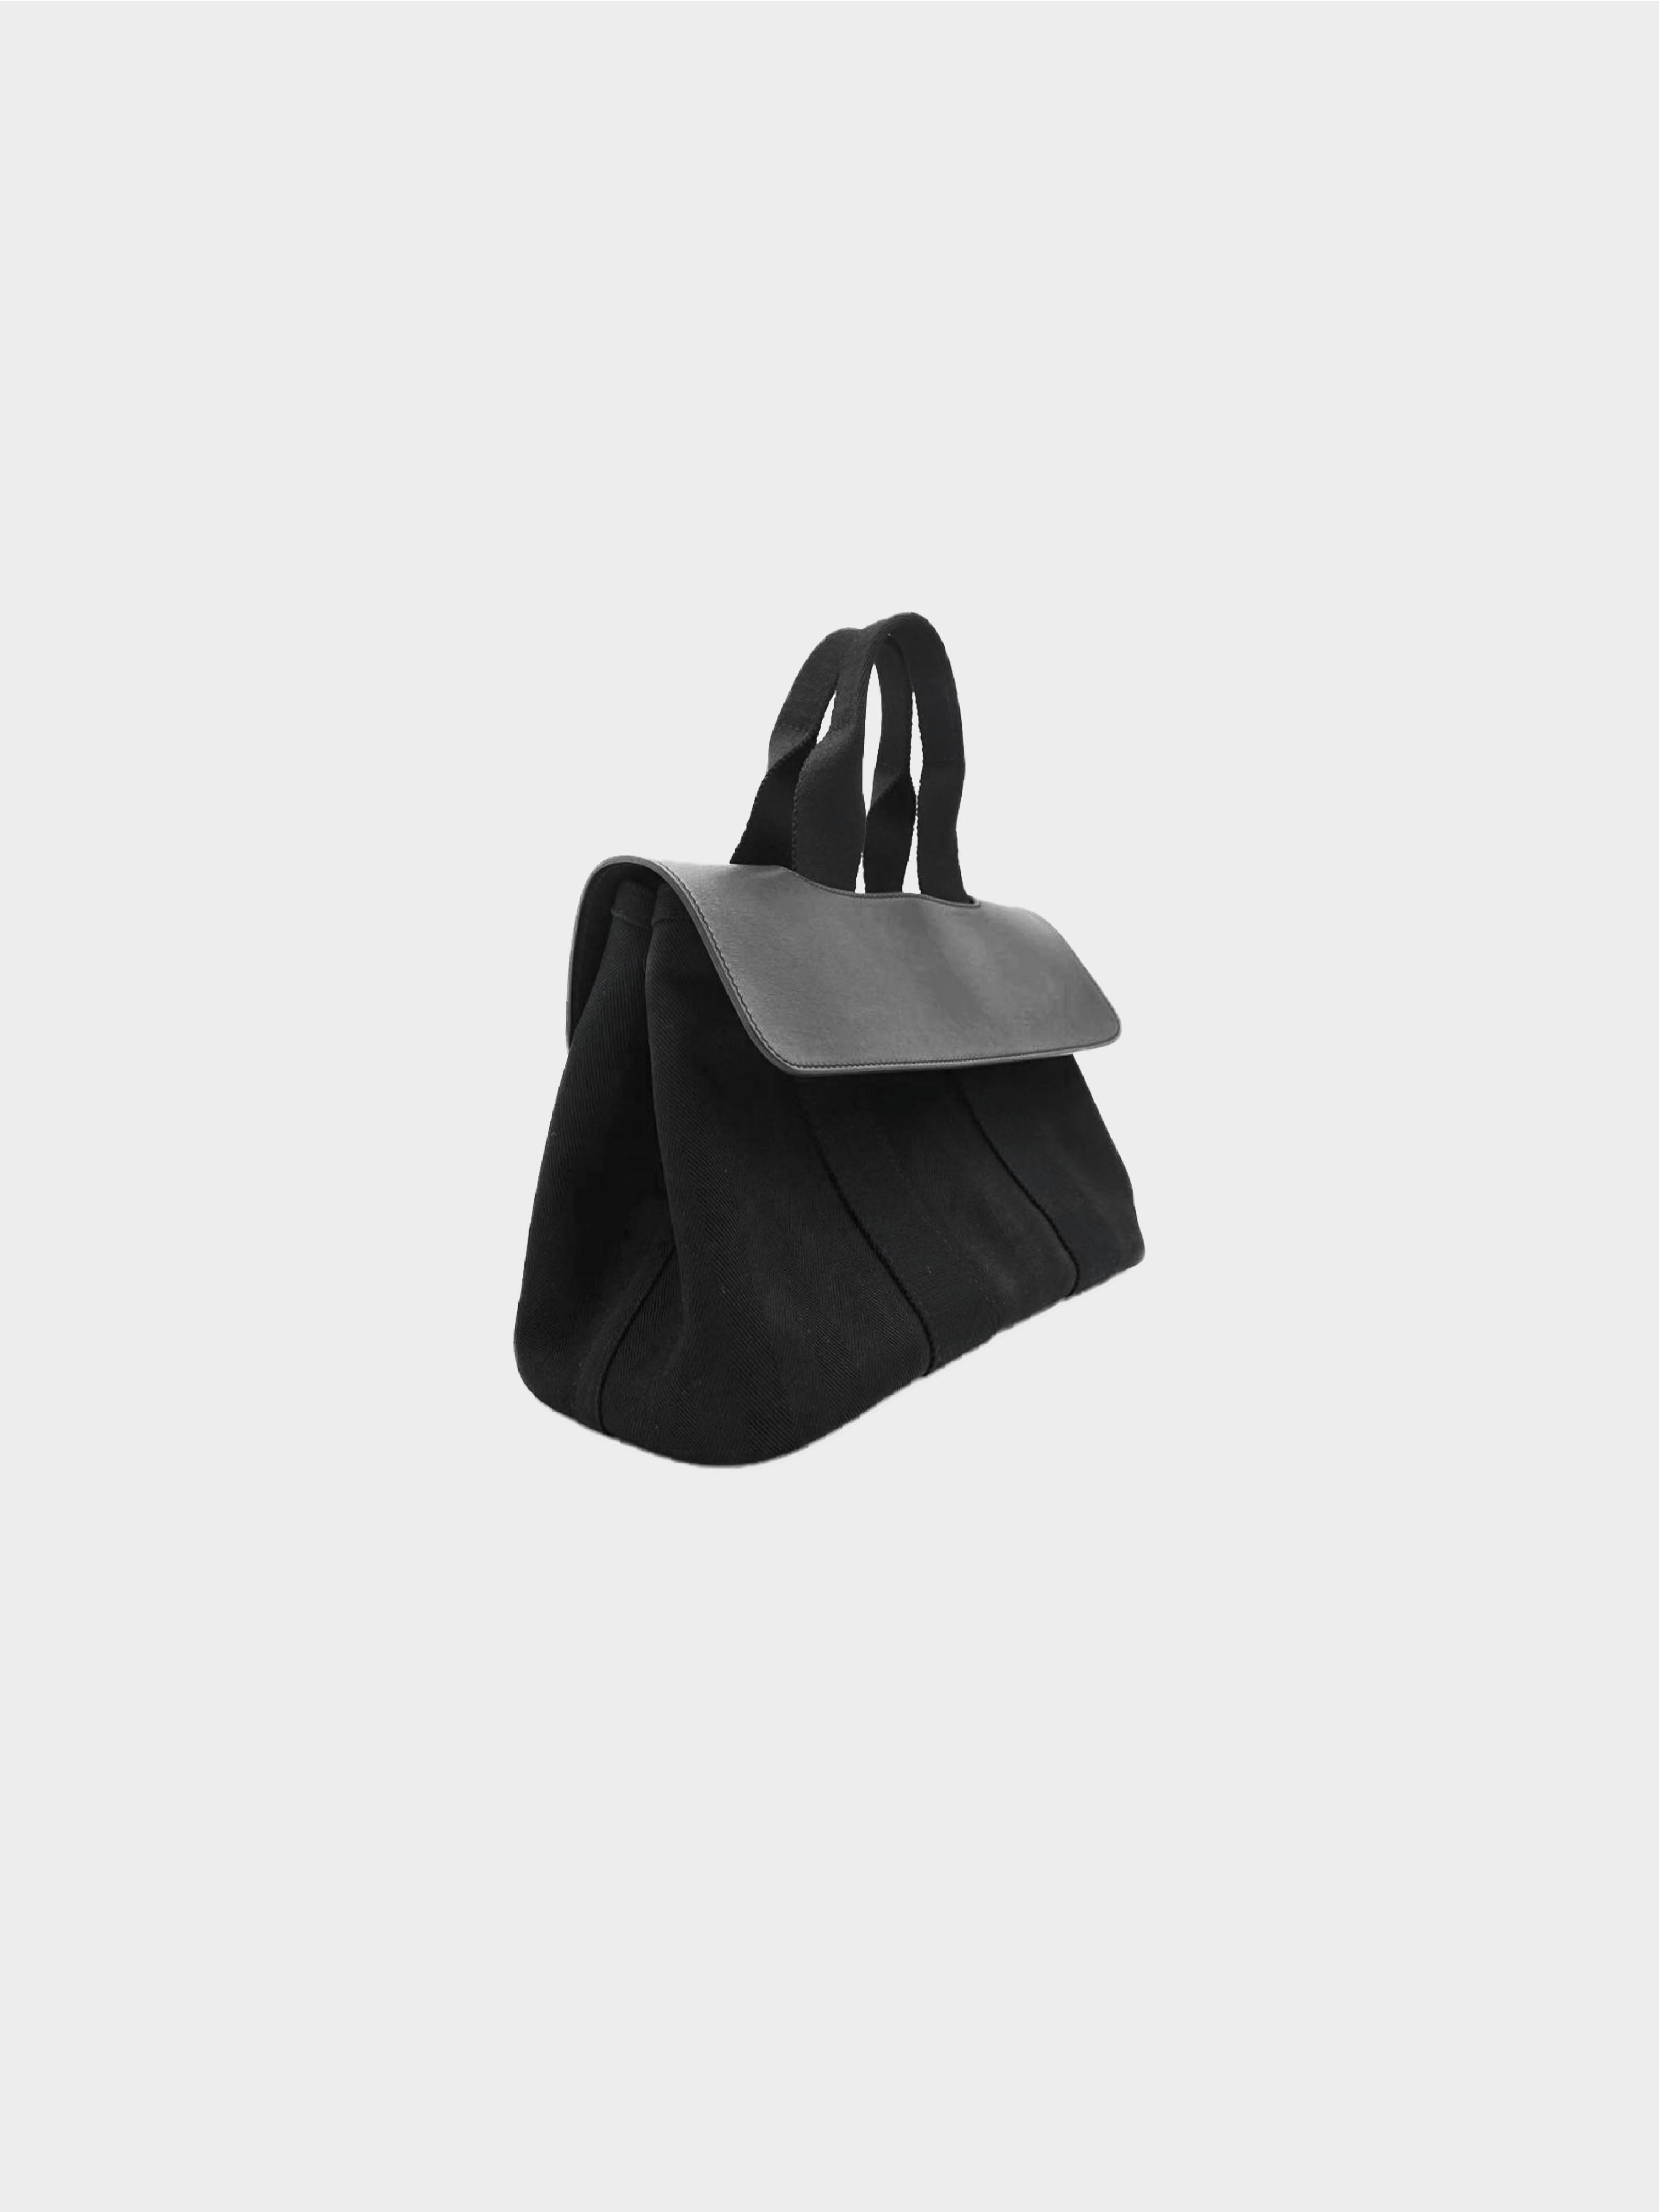 Hermès 2000s Black Valparaiso PM Handbag